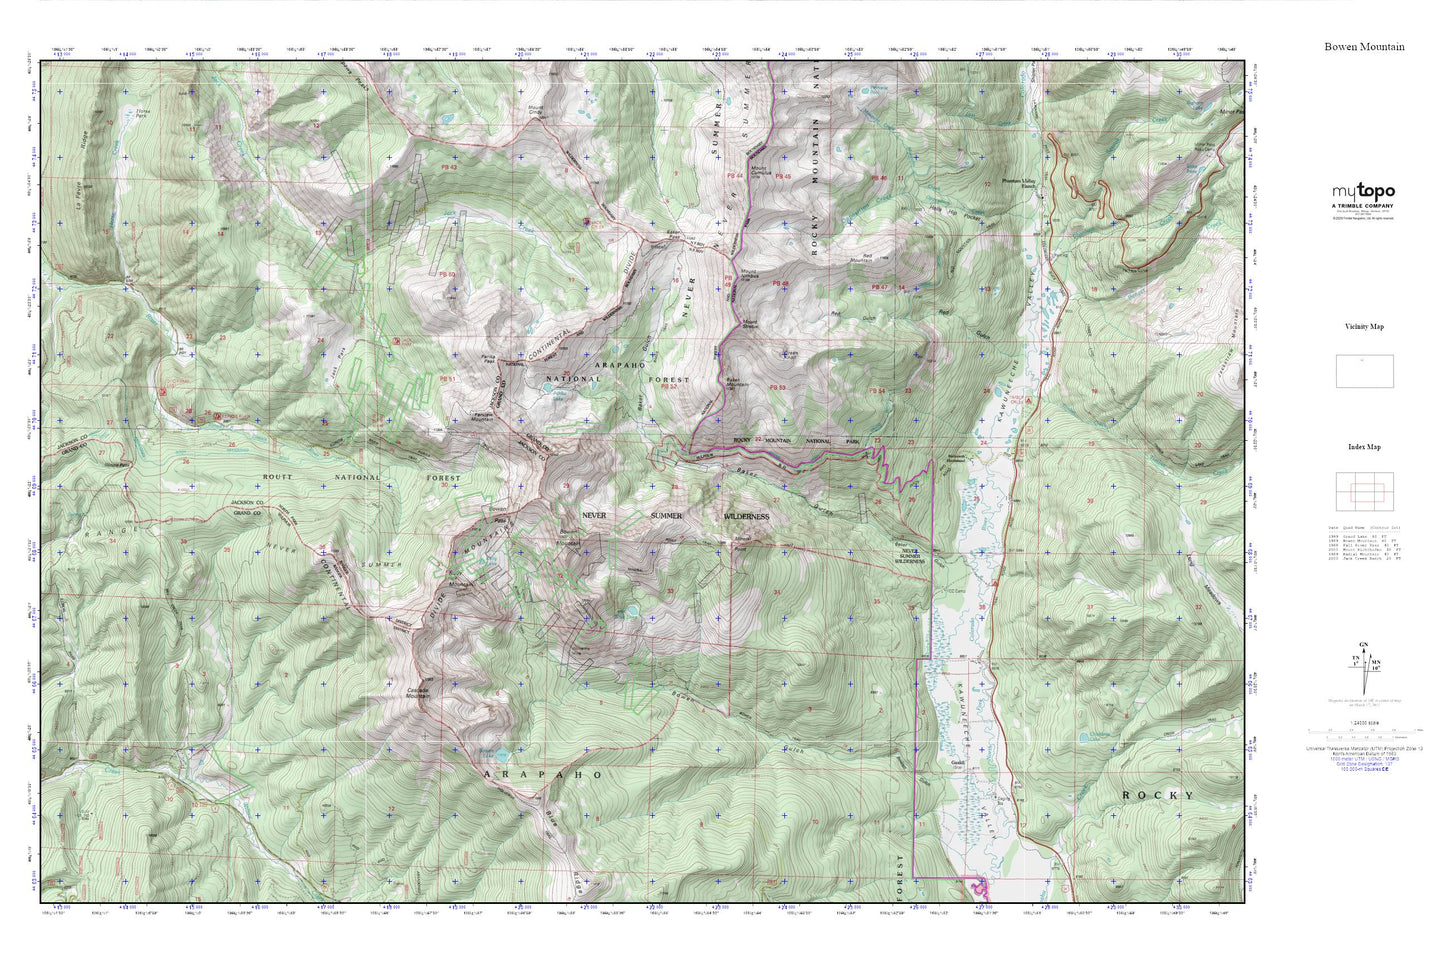 Never Summer Wilderness MyTopo Explorer Series Map Image